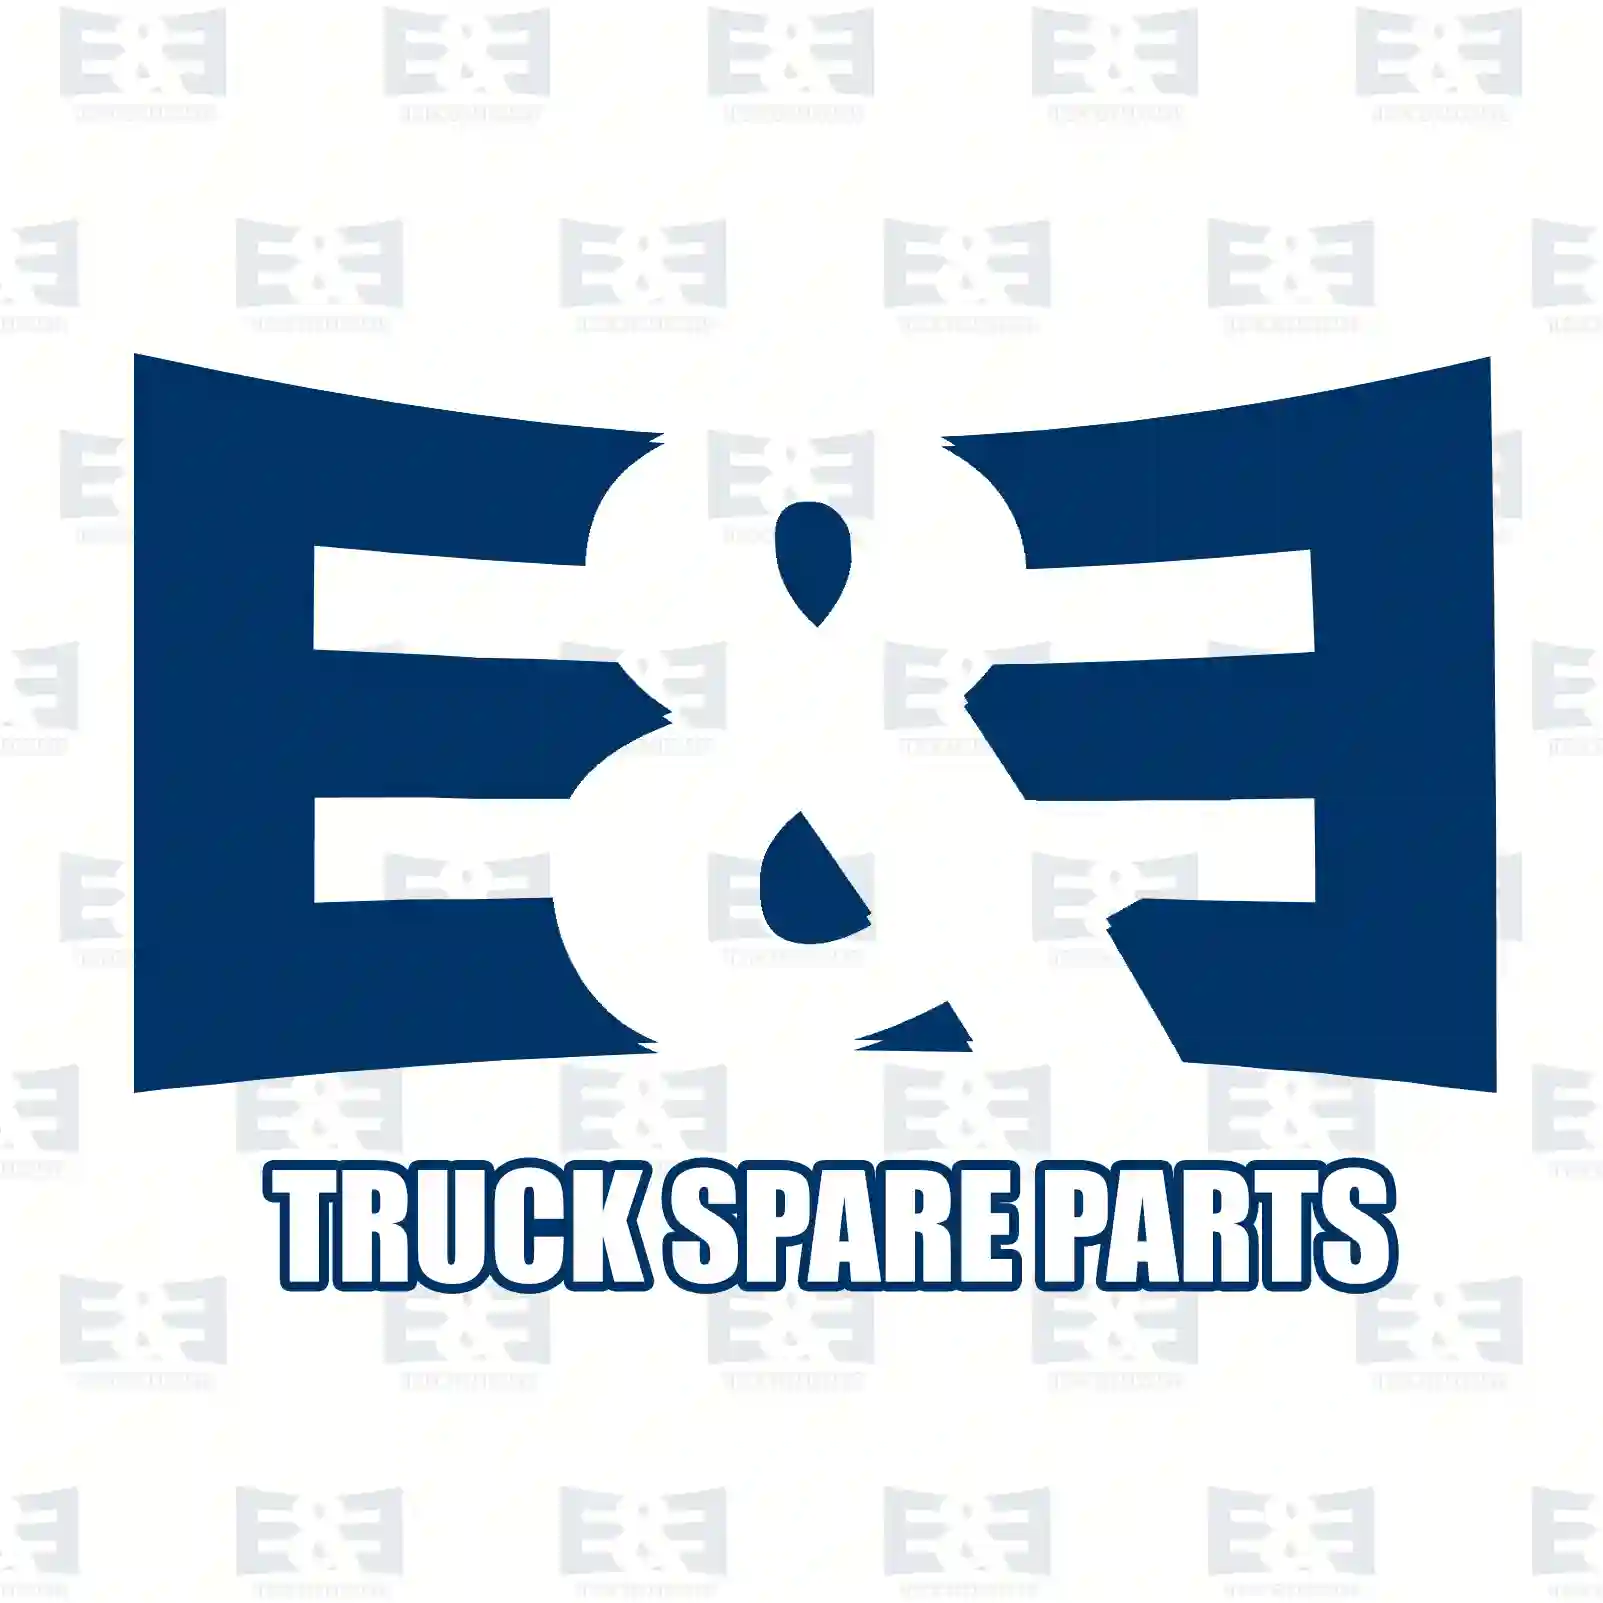 Oil seal, 2E2277914, 40101843, 40101840, 40101940, ||  2E2277914 E&E Truck Spare Parts | Truck Spare Parts, Auotomotive Spare Parts Oil seal, 2E2277914, 40101843, 40101840, 40101940, ||  2E2277914 E&E Truck Spare Parts | Truck Spare Parts, Auotomotive Spare Parts